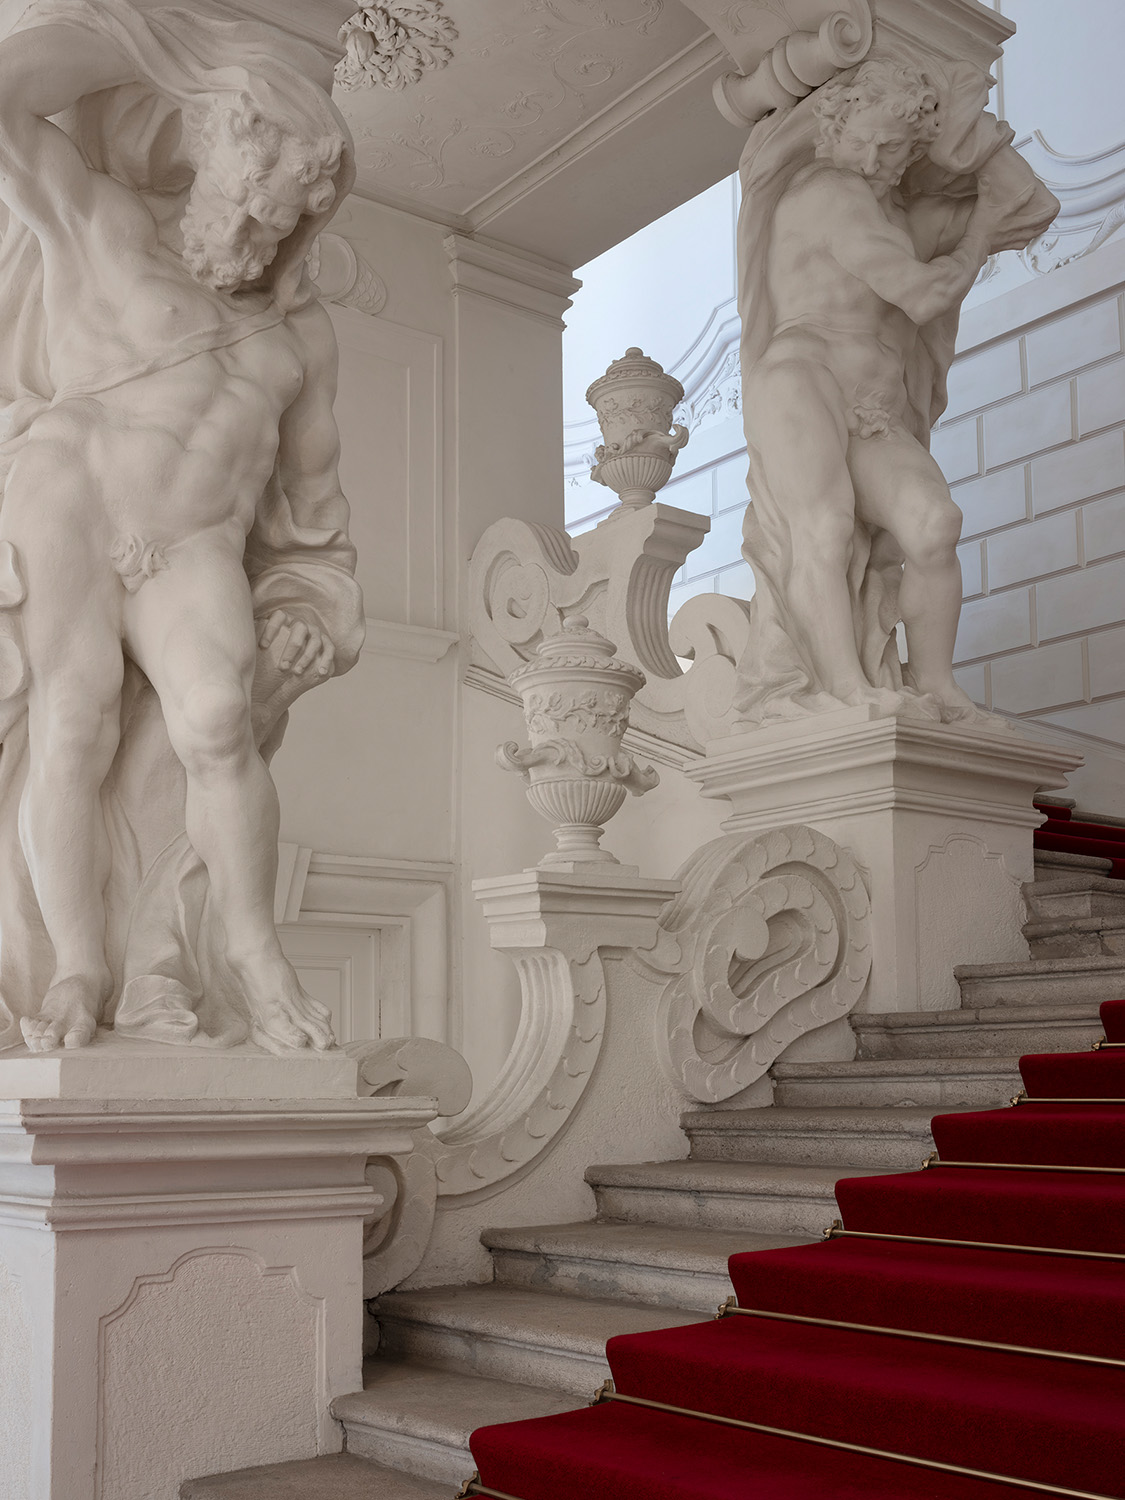 Stiegenaufgang mit marmornen Atlanten und einer mit rotem Teppich ausgelegten Treppen